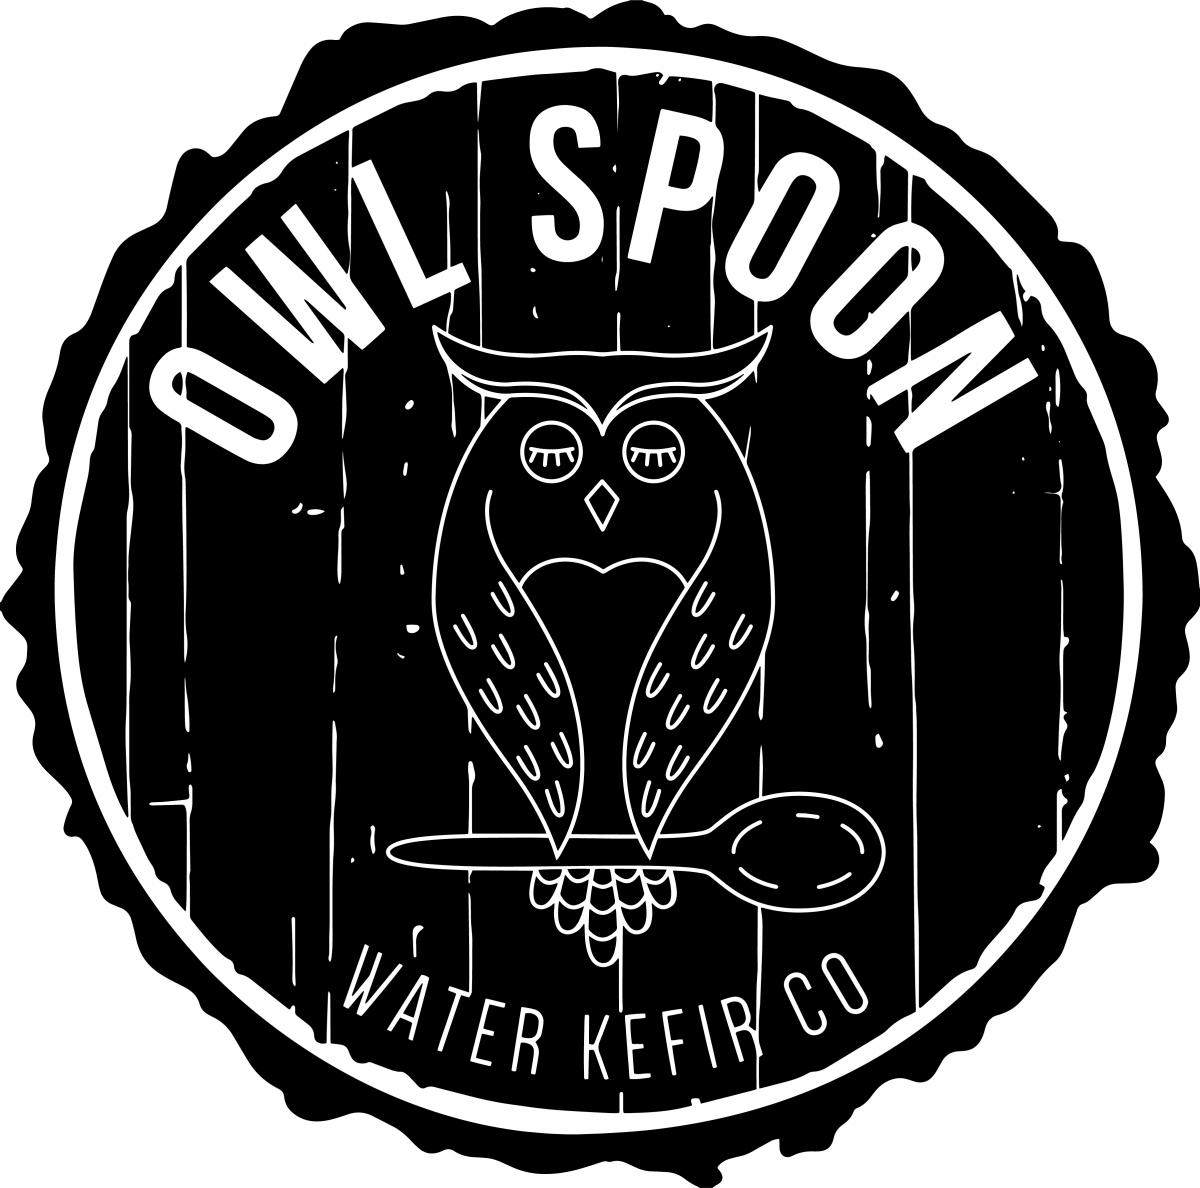 Owl Spoon Water Kefir Co